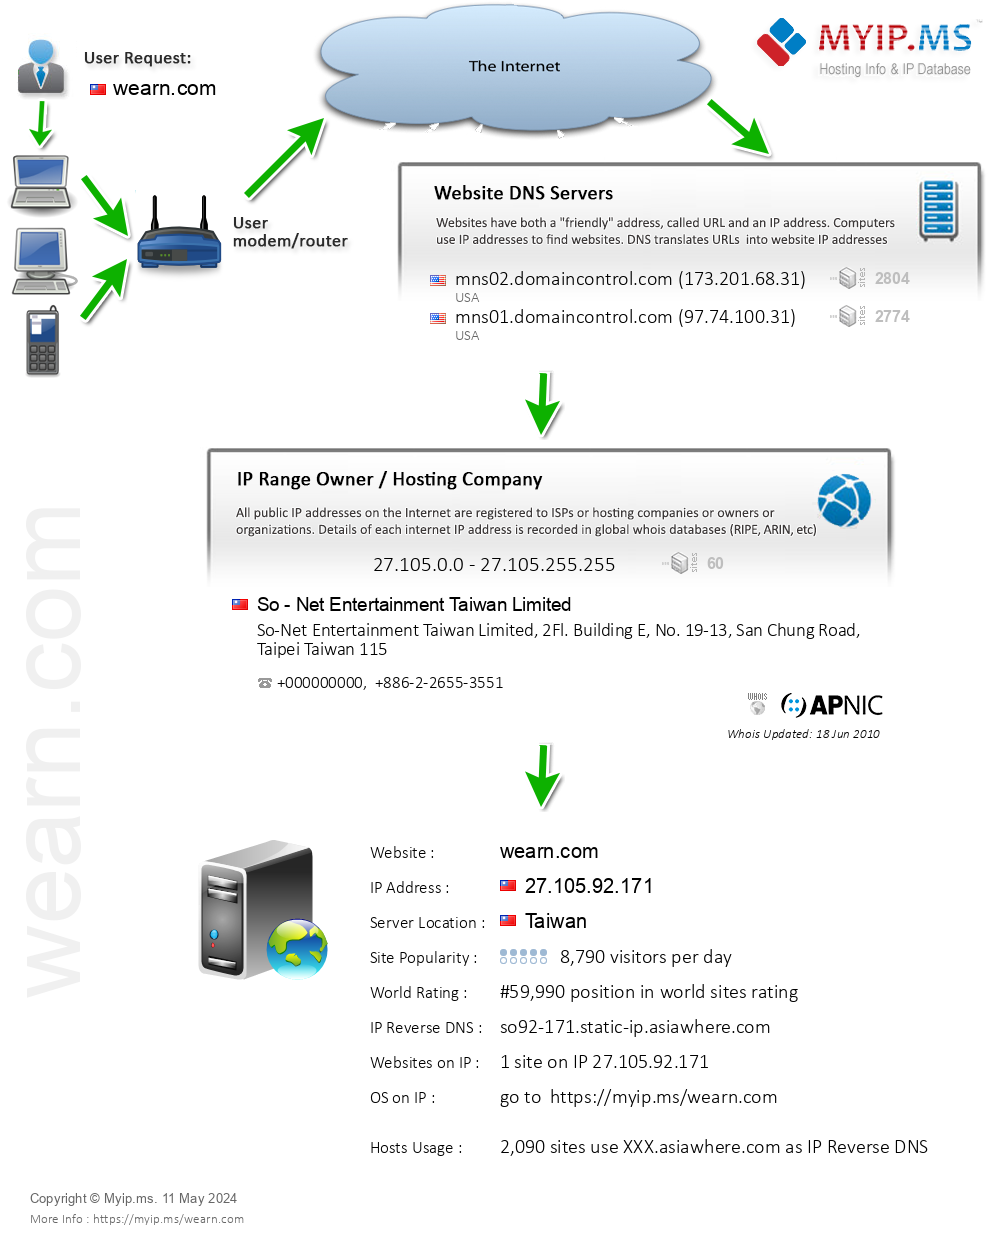 Wearn.com - Website Hosting Visual IP Diagram